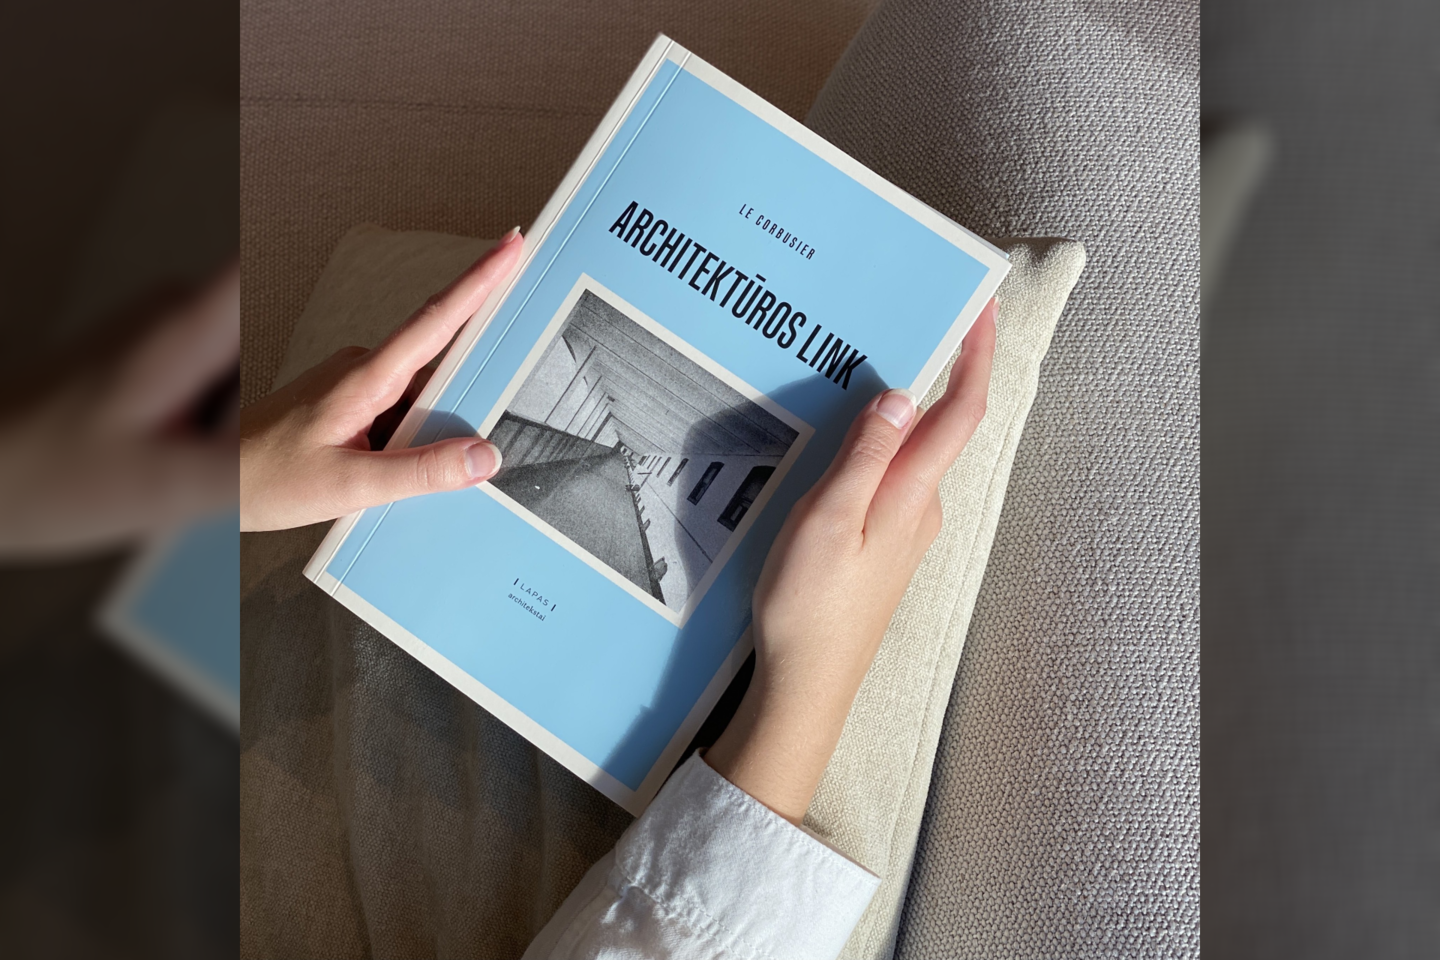 Le Corbusier knyga „Architektūros link“ išleista 1923 m., o jos vertimas į lietuvių kalbą pasirodė 2019-aisiais.<br>Leidyklos LAPAS nuotr.